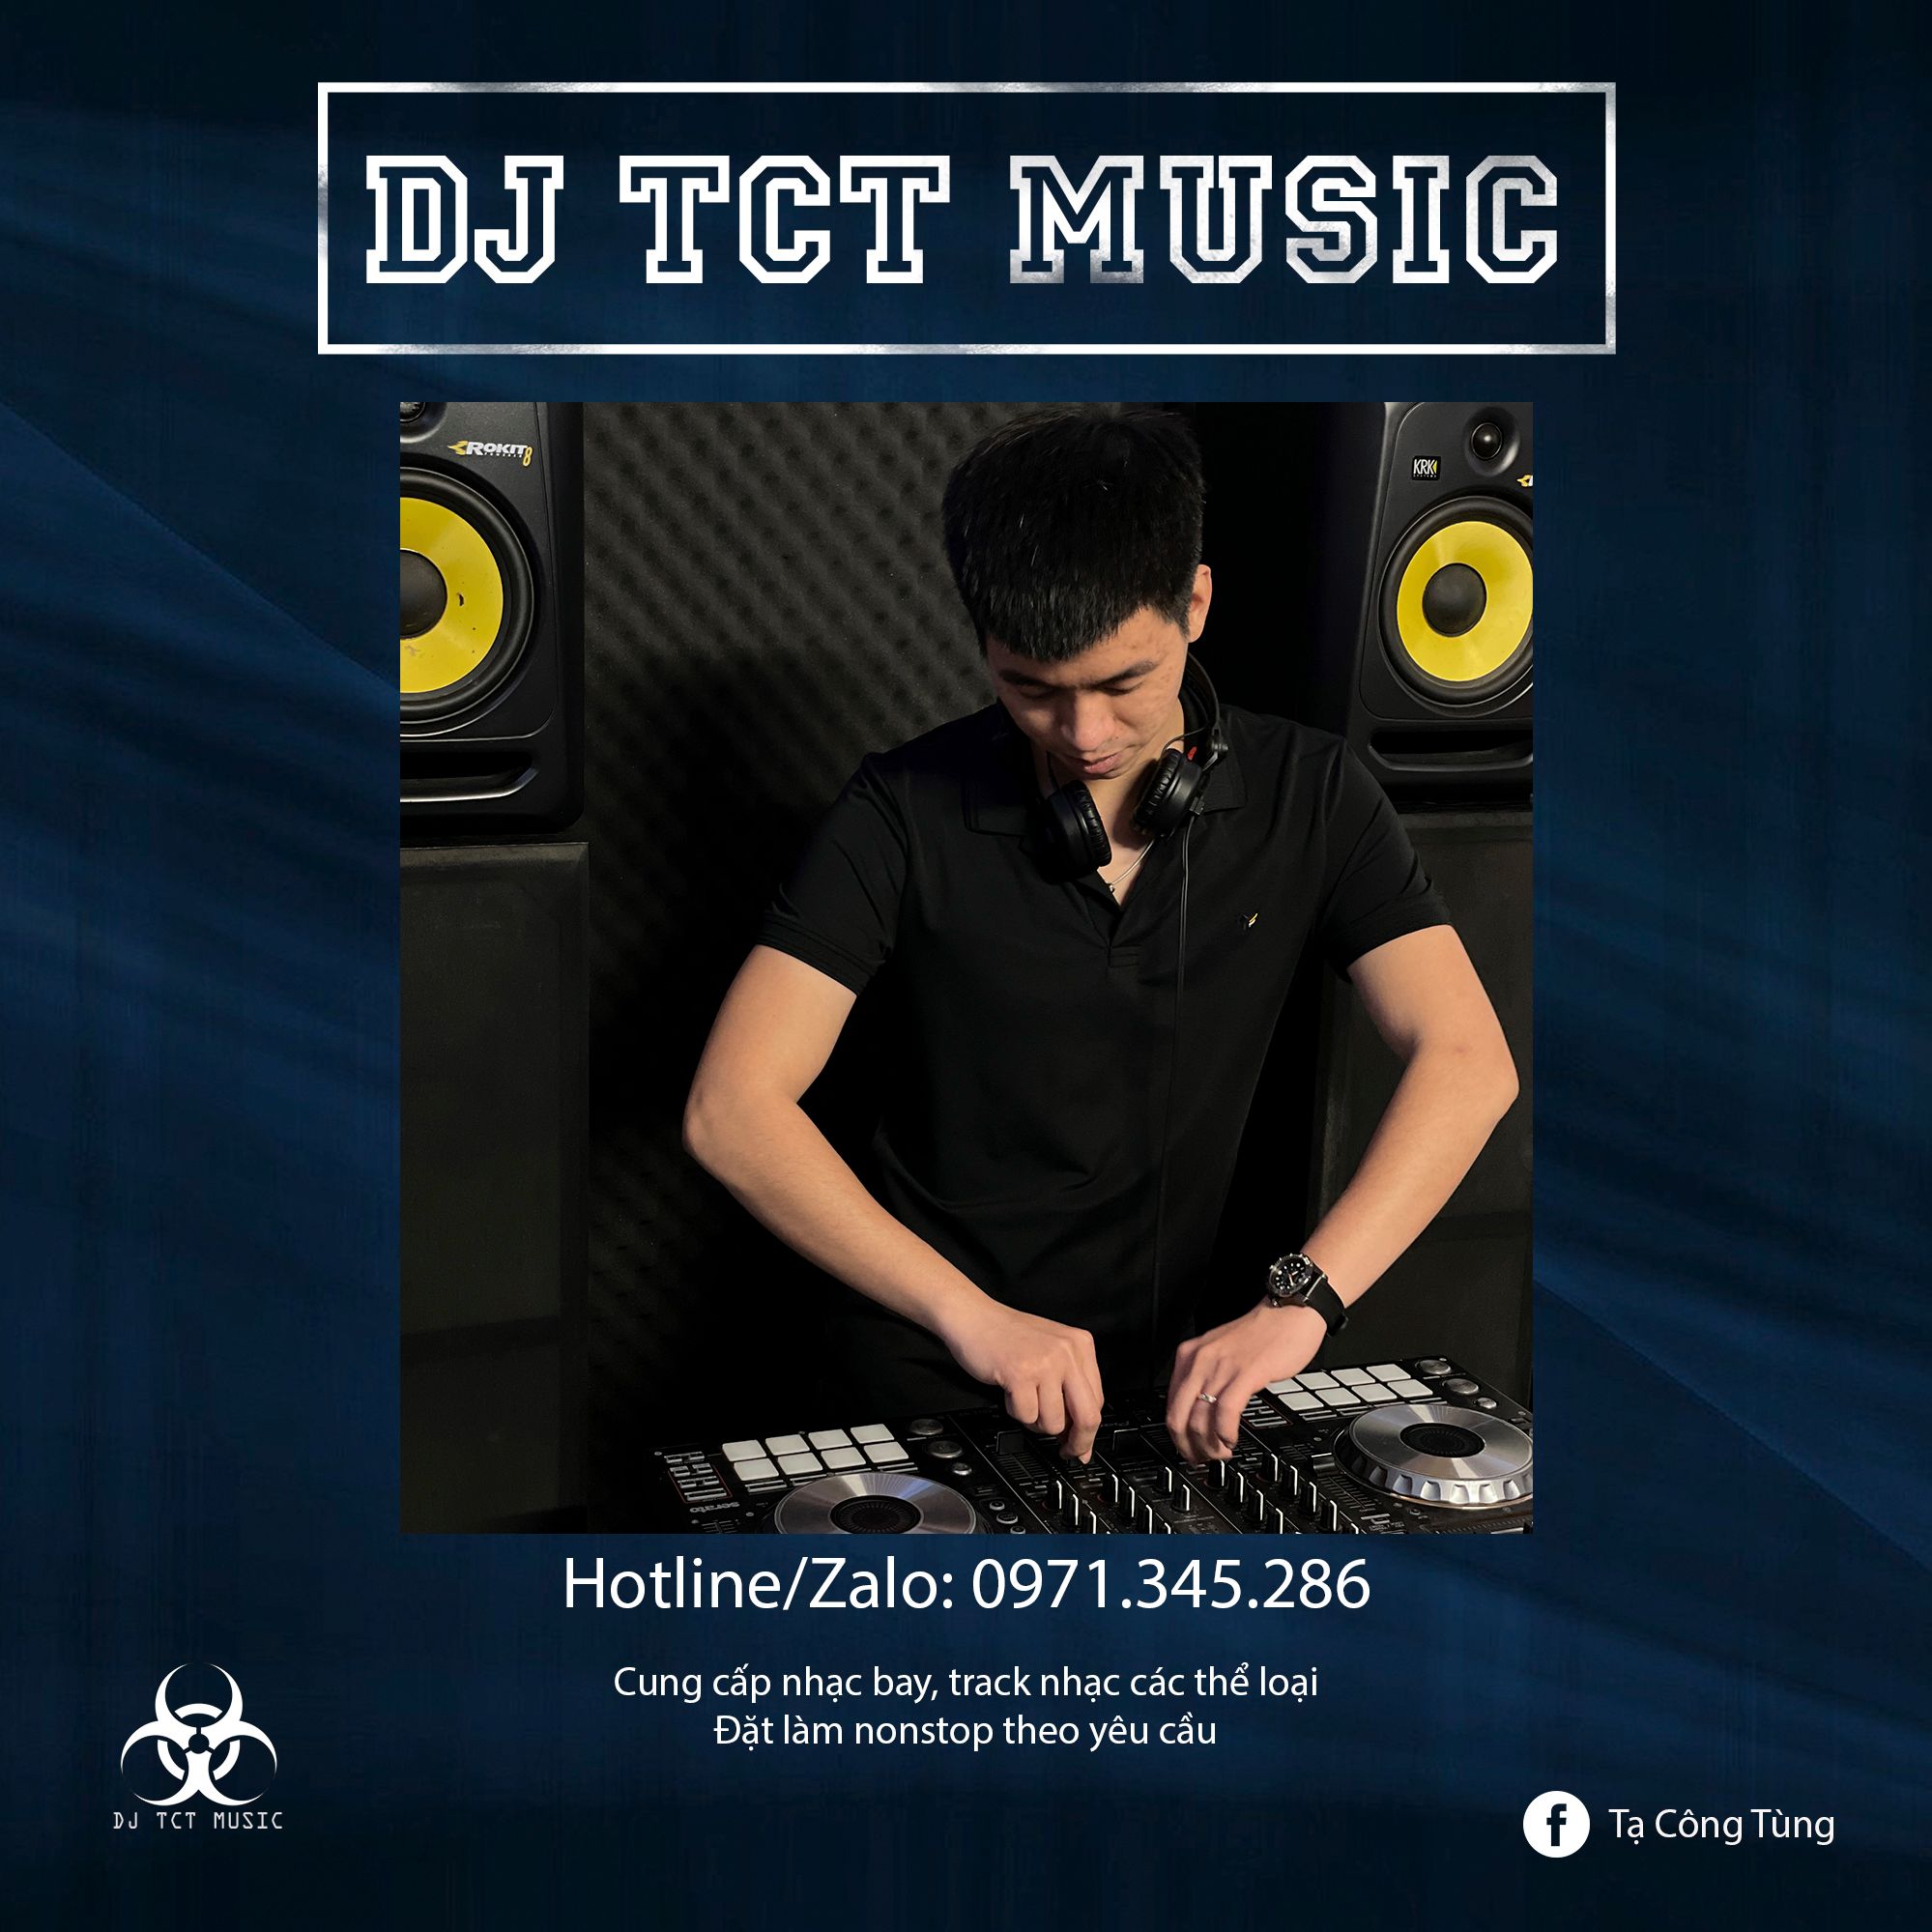 Landa HÀNG TRÔI KE 2022 _ DJ TCT MUSIC 0971345286 _ NONSTOP BAY PHÒNG GIỌT NƯỚC CHẢY DỊU ÊM